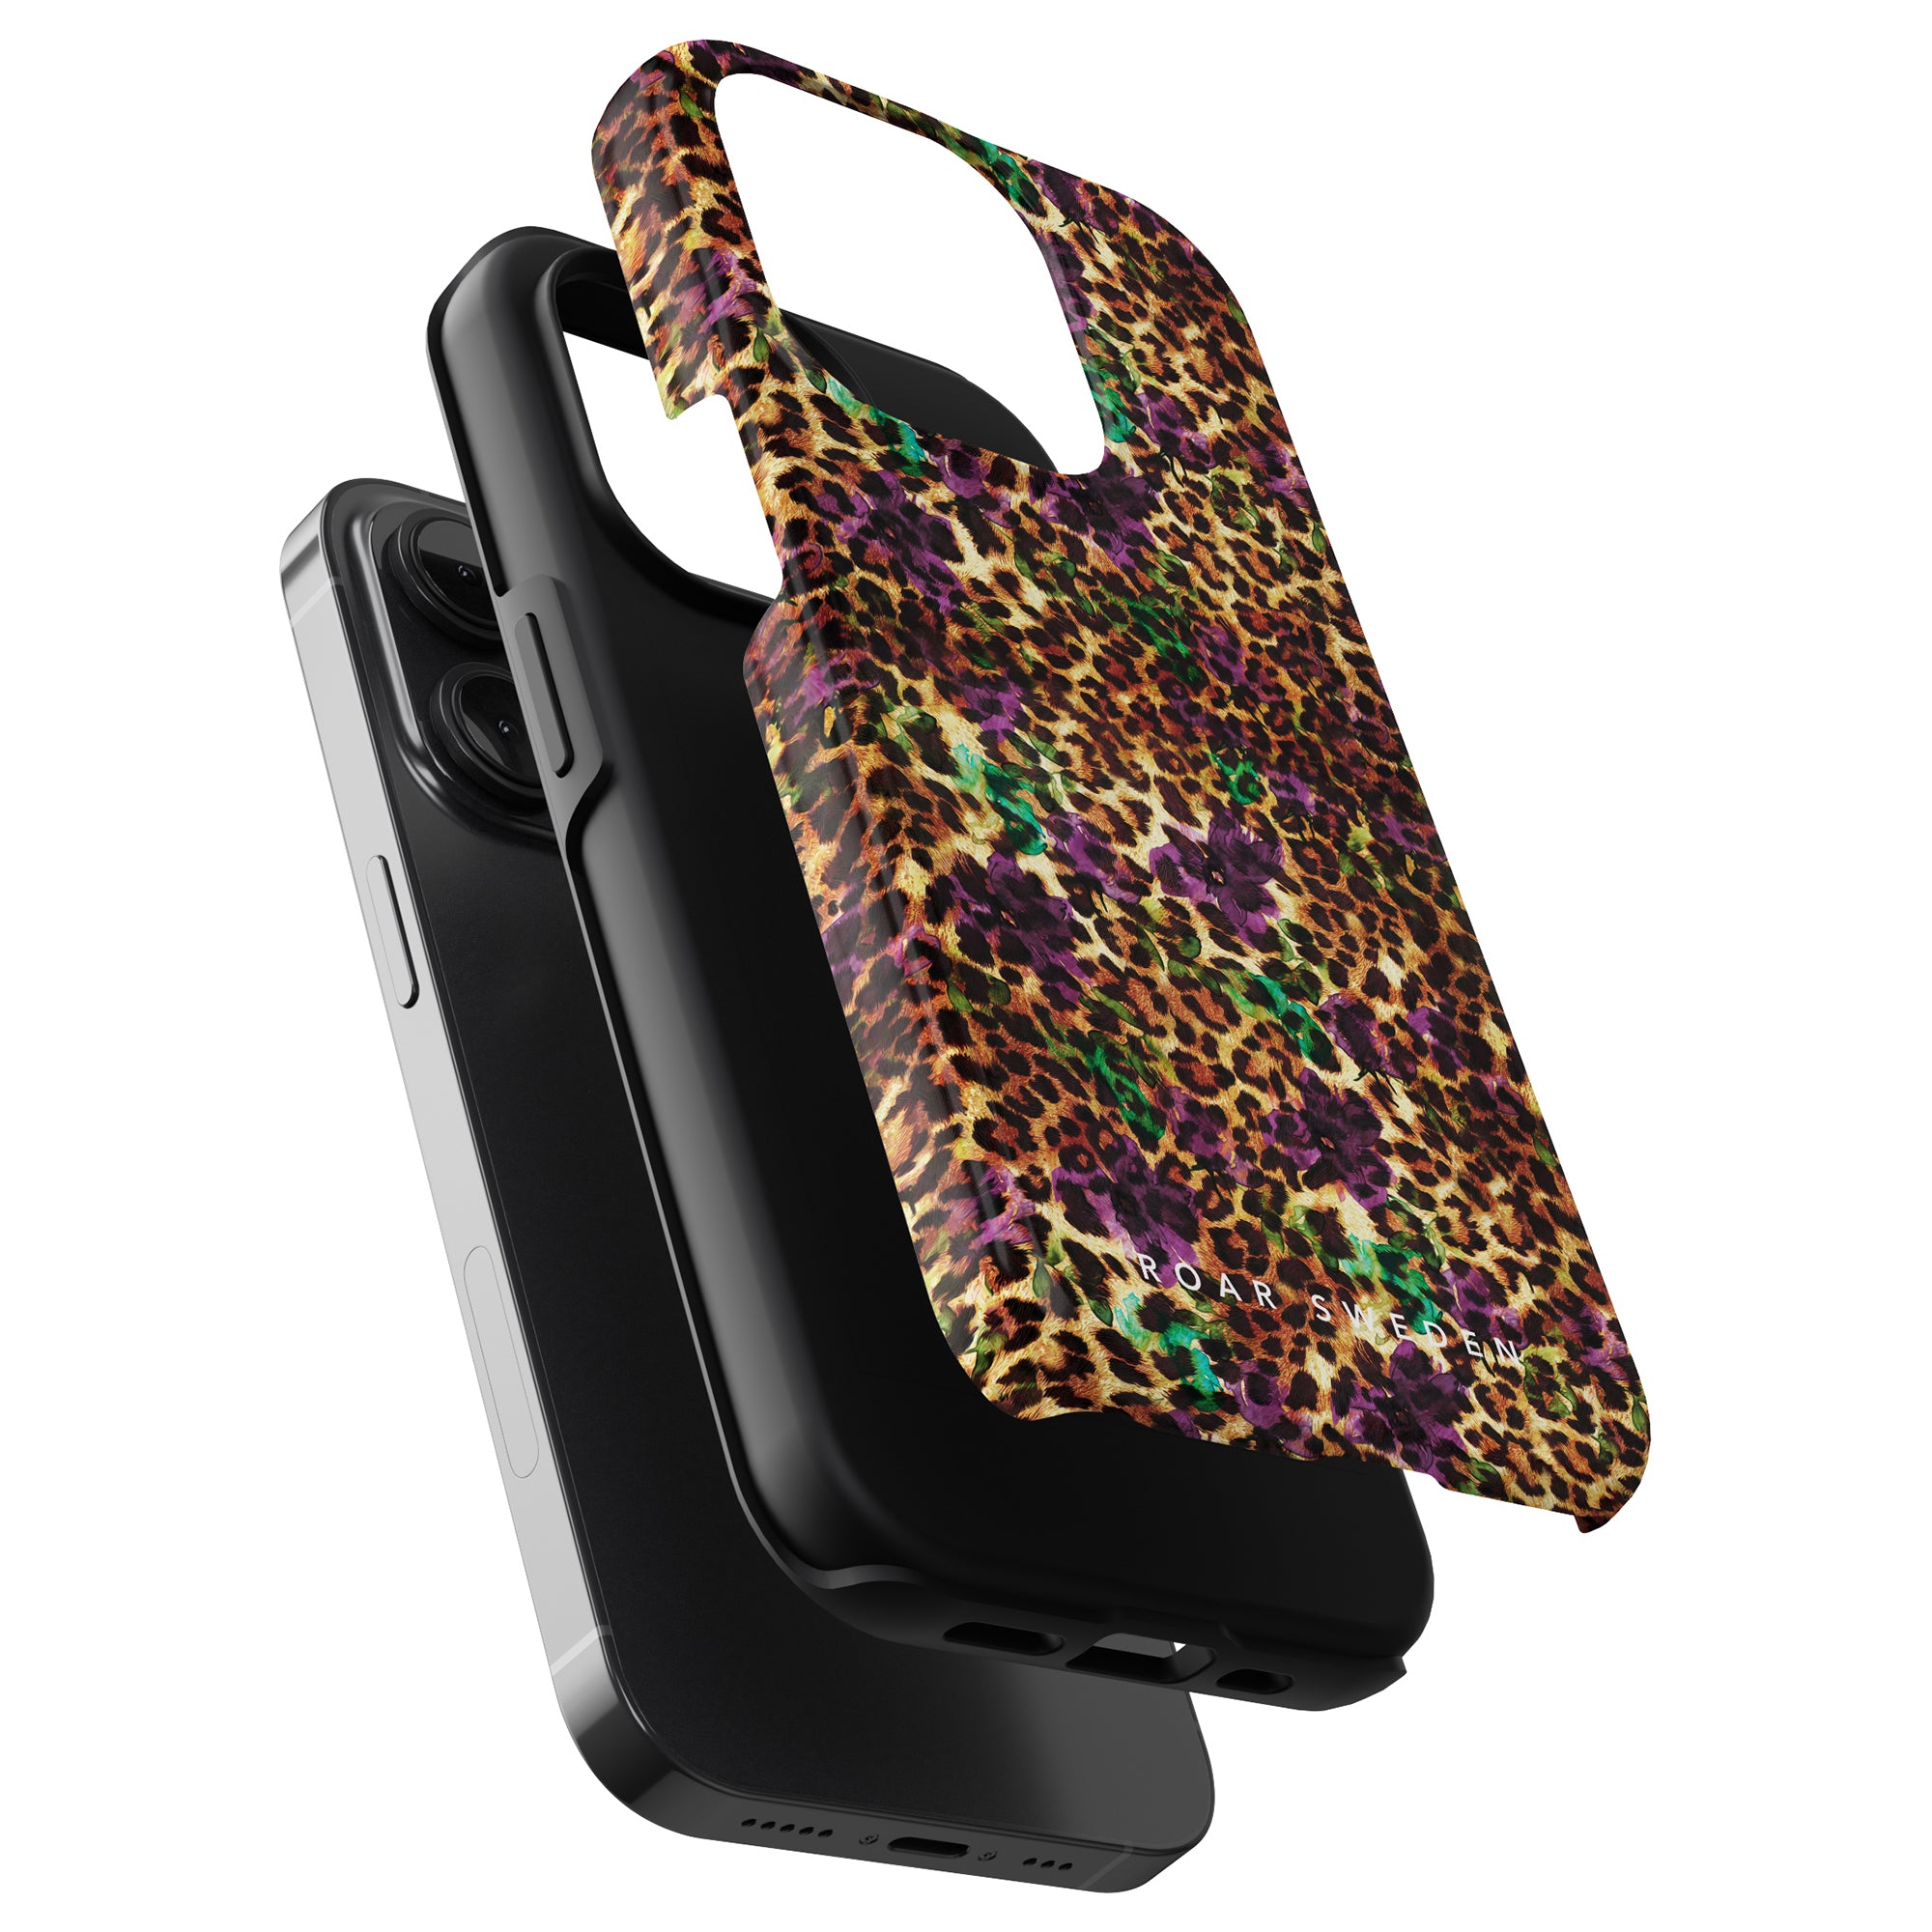 Vi presenterar vårt eleganta och snygga Flower Leopard - Tough Case, speciellt designat för iPhone 11 Pro.